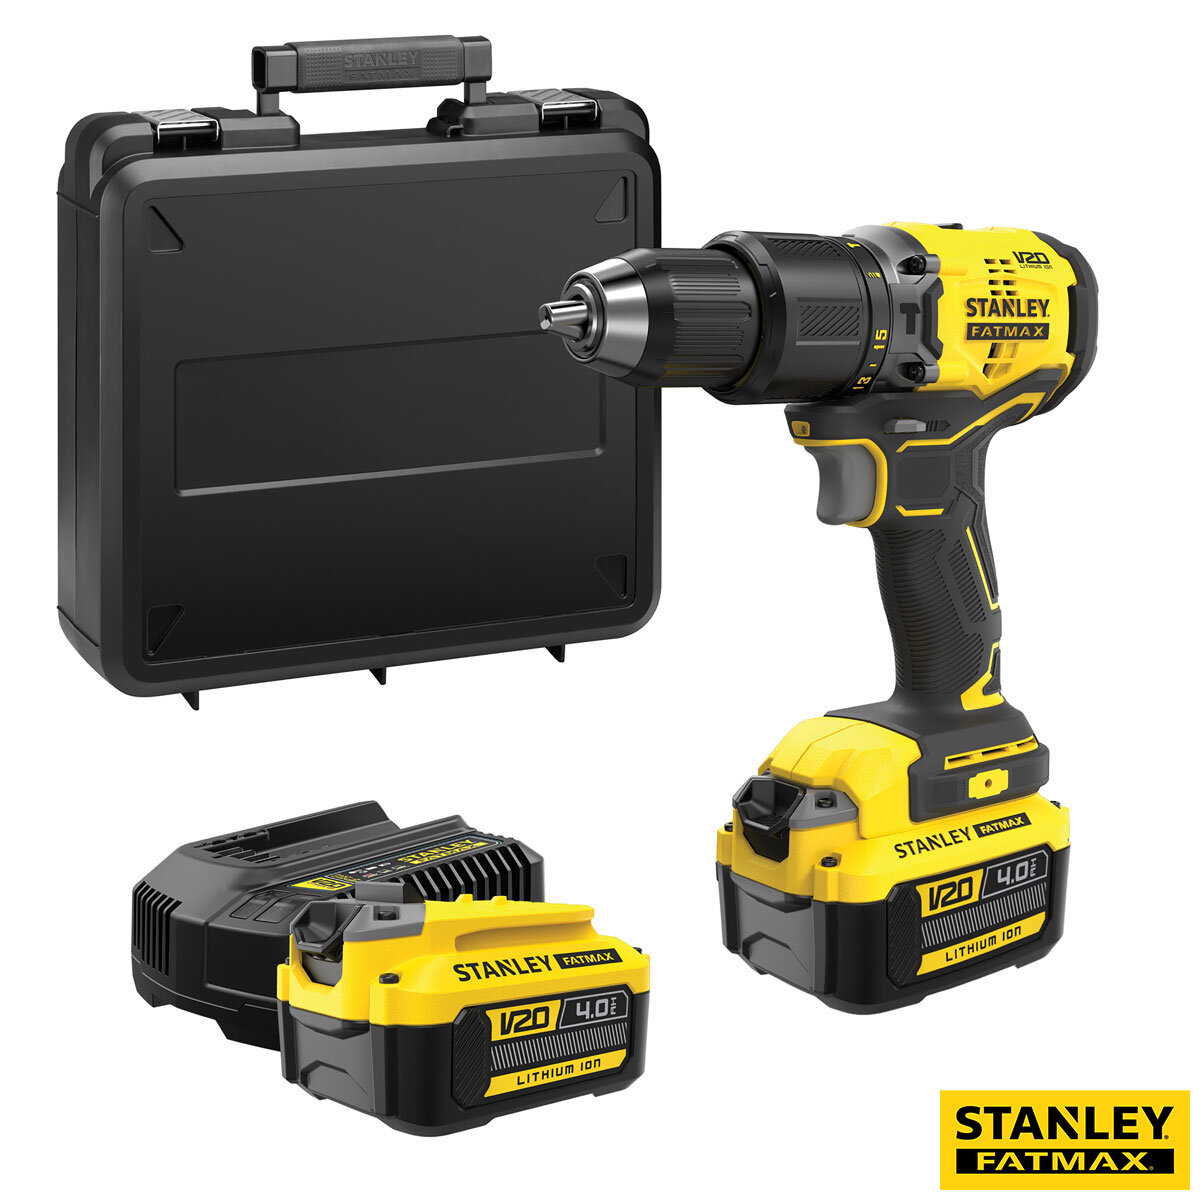 Stanley Fatmax V20 18V Cordless Brushless Hammer Drill wi